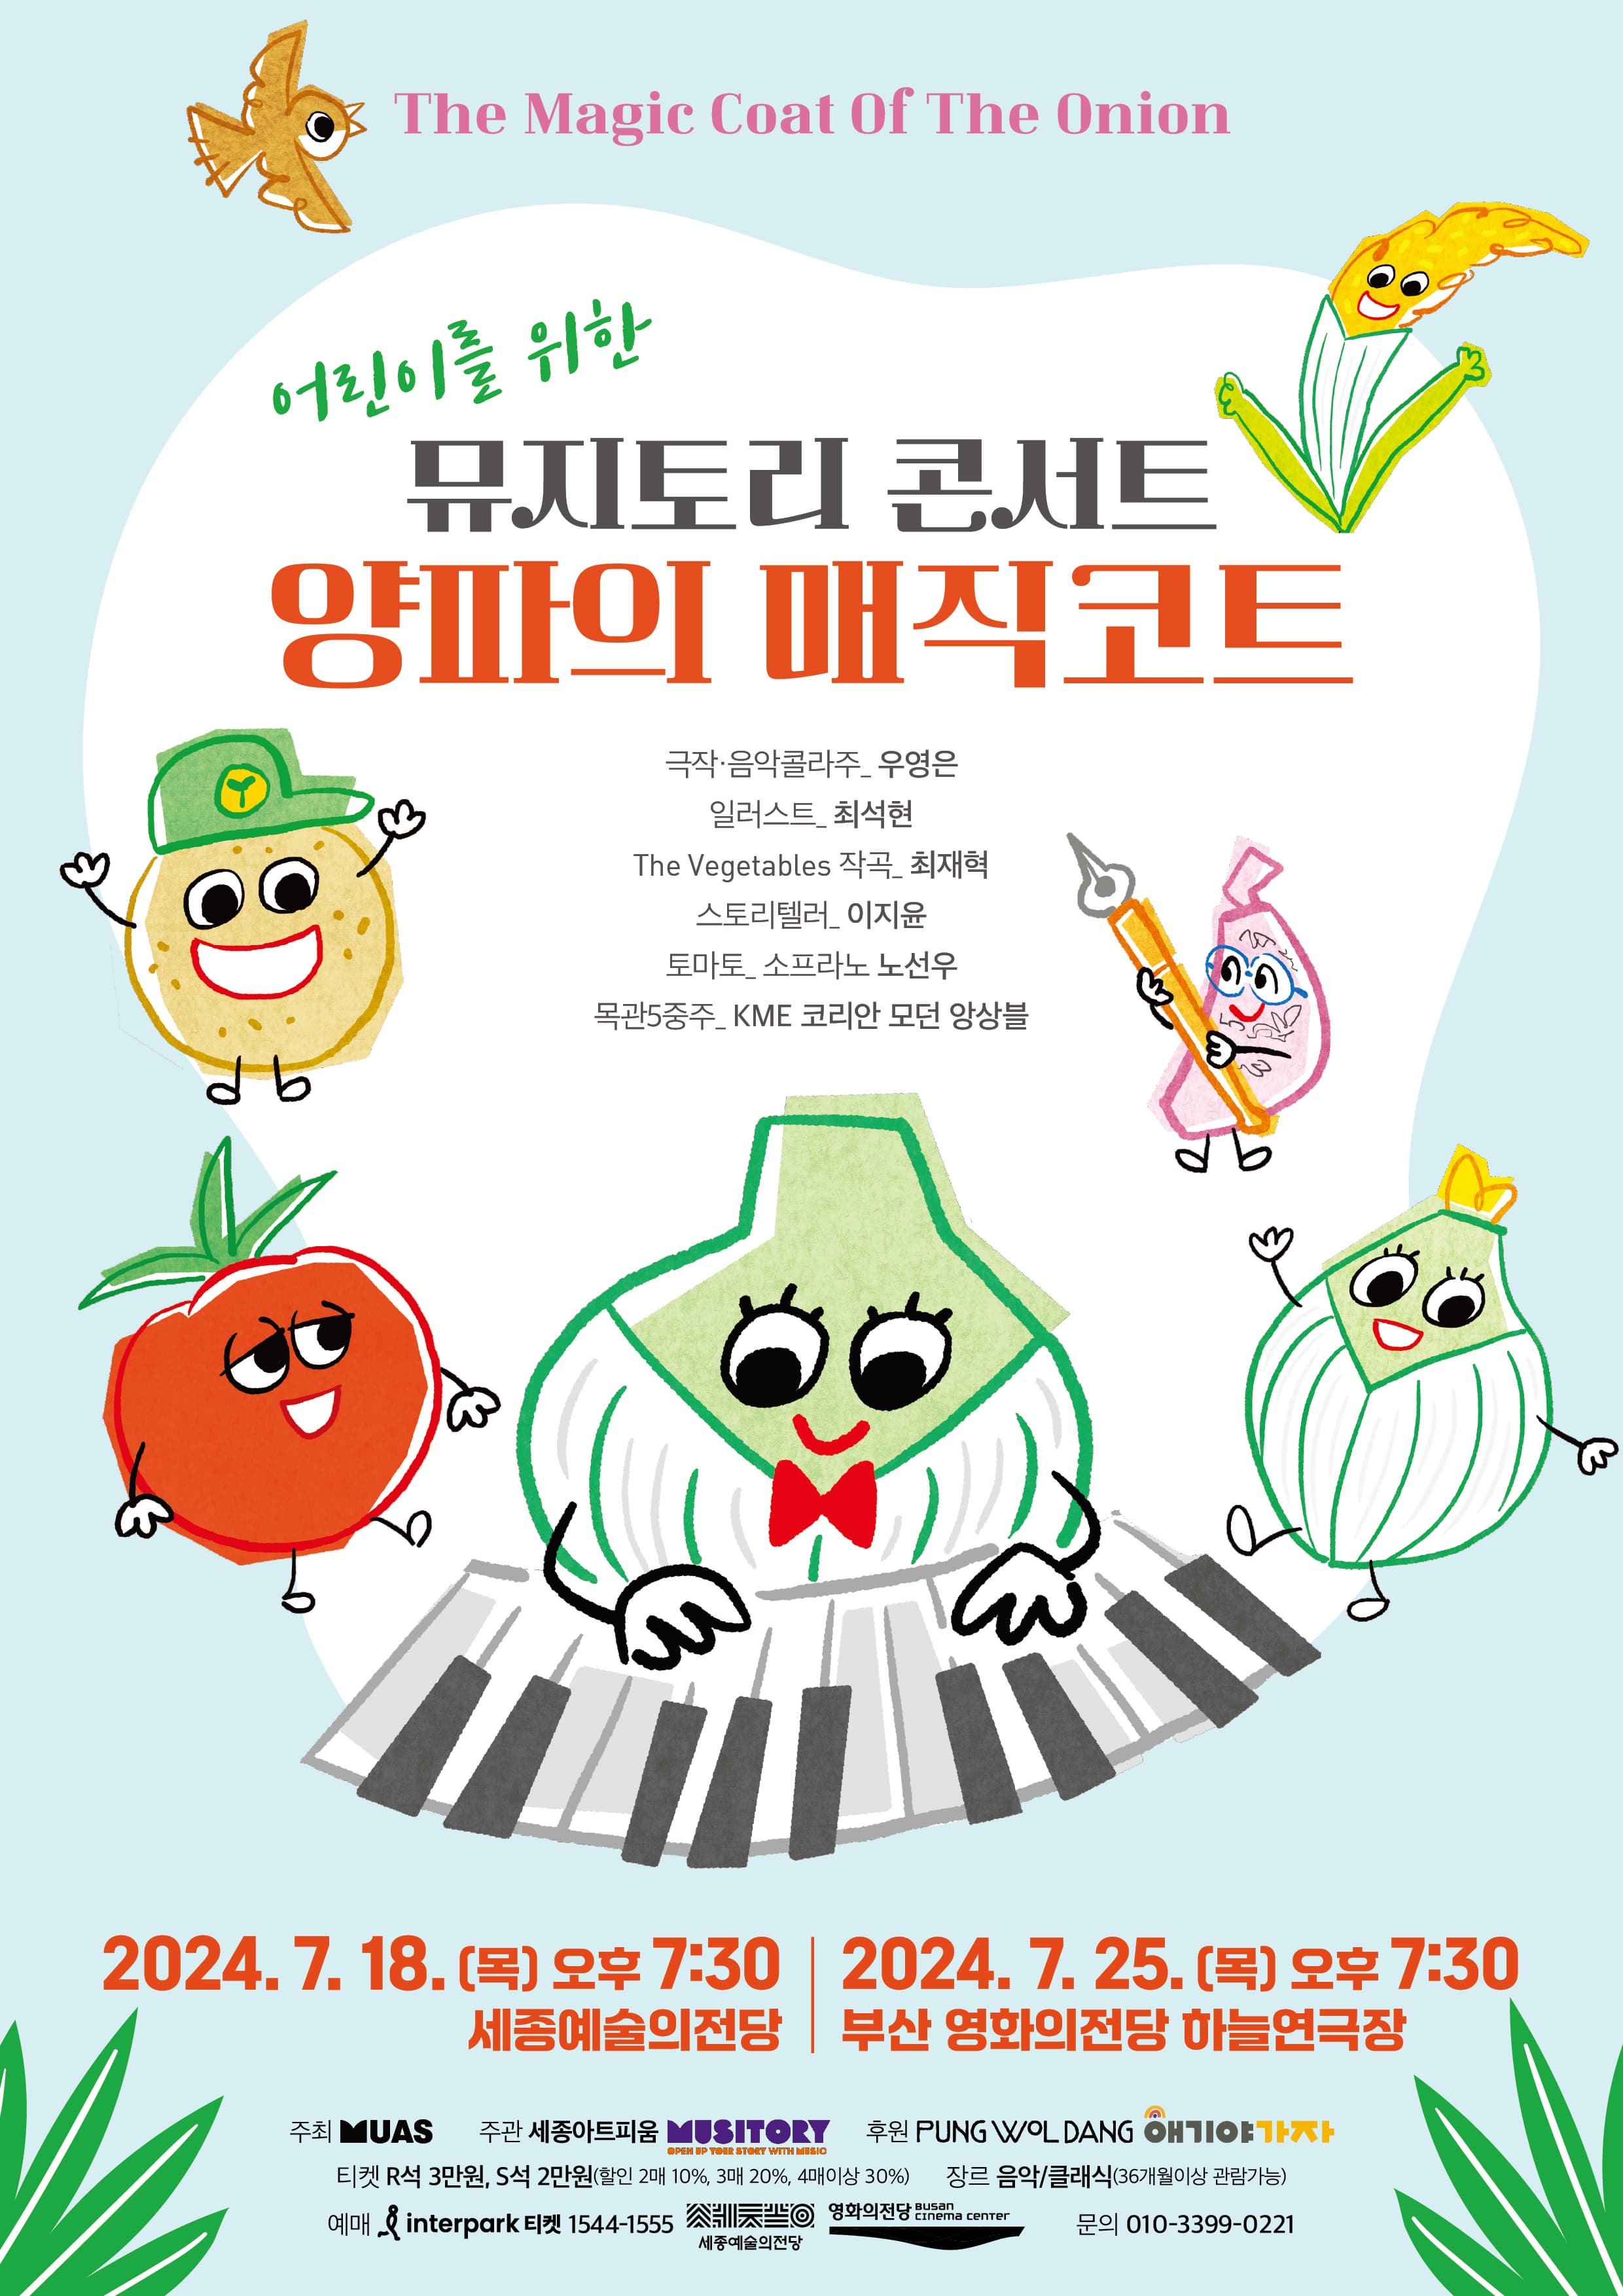 [부산] 어린이를 위한 뮤지토리 콘서트 양파의 매직코트